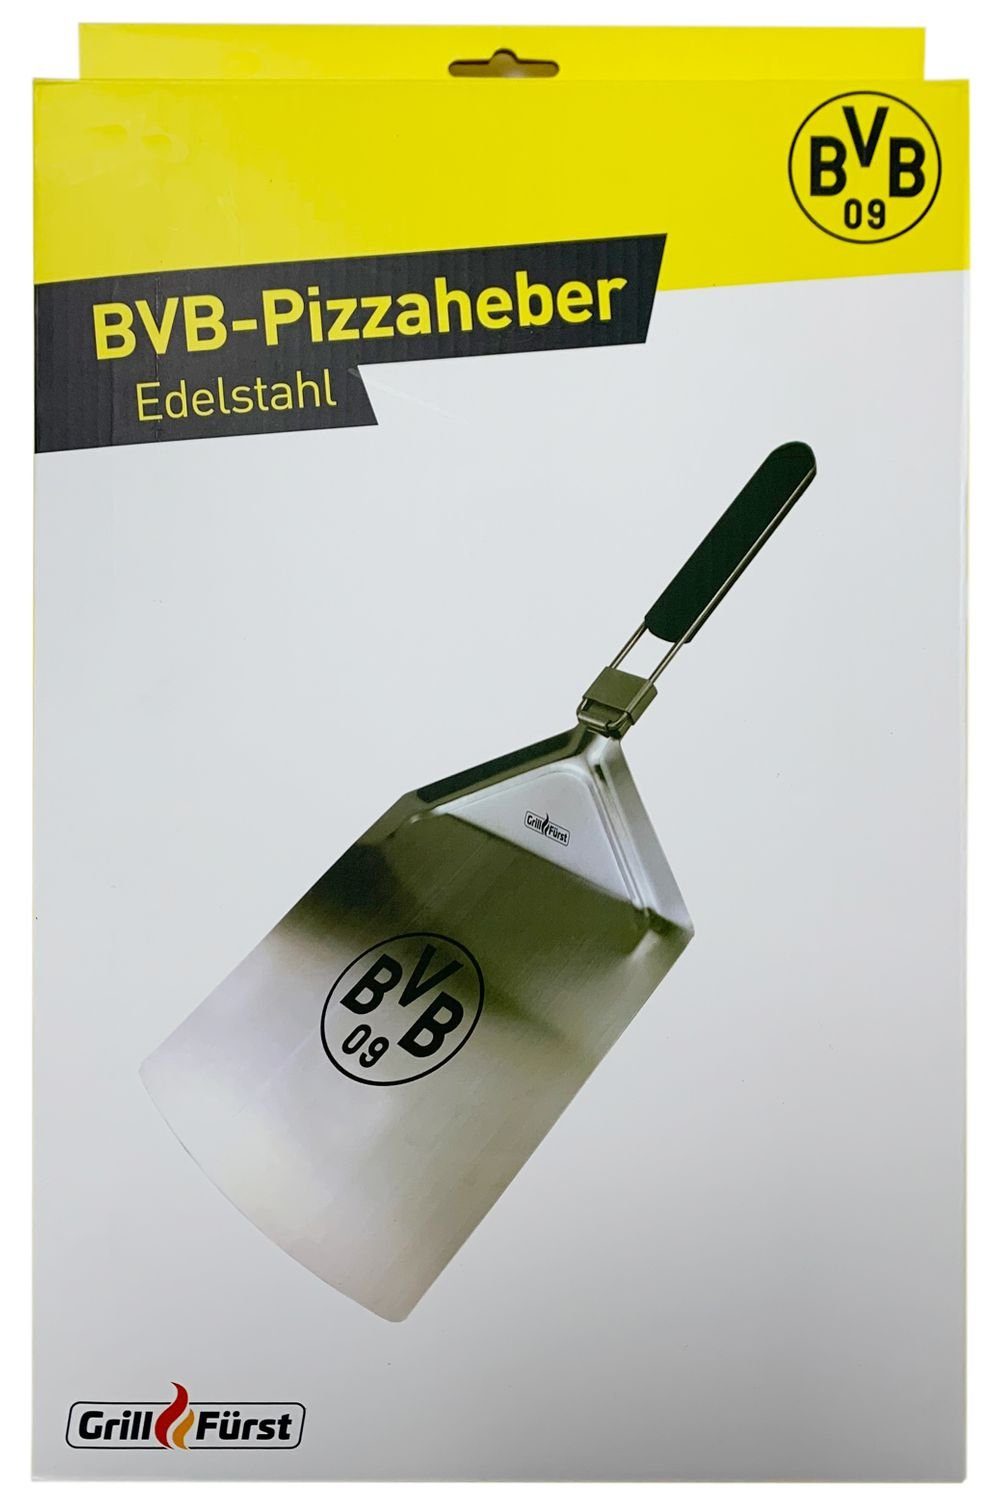 Edition Grillfürst / Dortmund klappbar Grillfürst Pizzaschieber Borussia Edelstahl Pizzaschieber - Pizzaheber